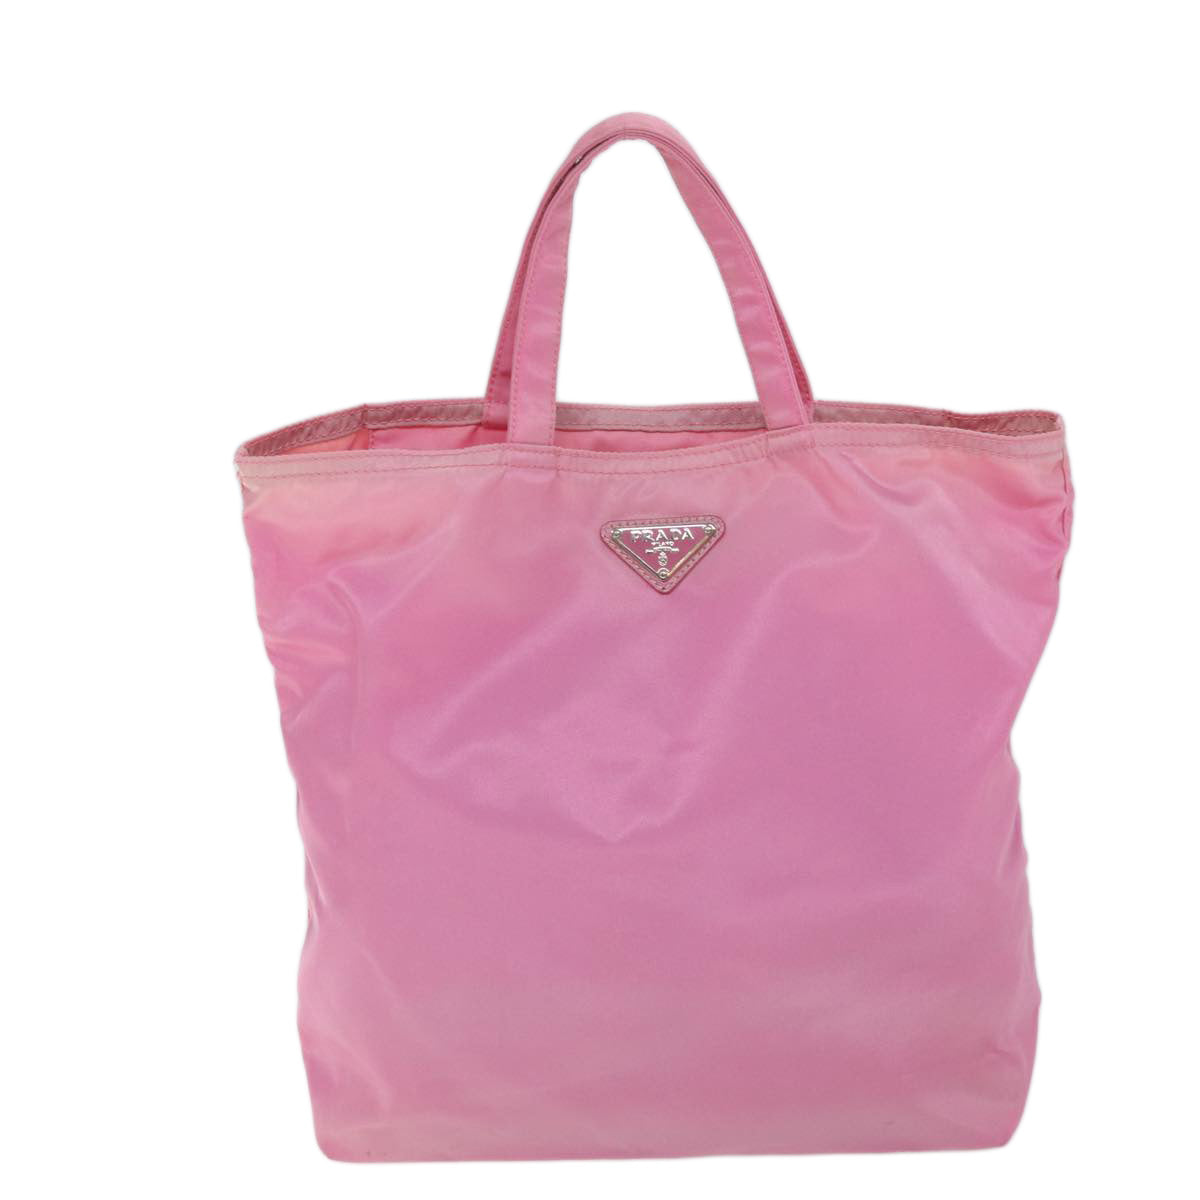 PRADA Hand Bag Nylon Pink Auth yk11651 - 0